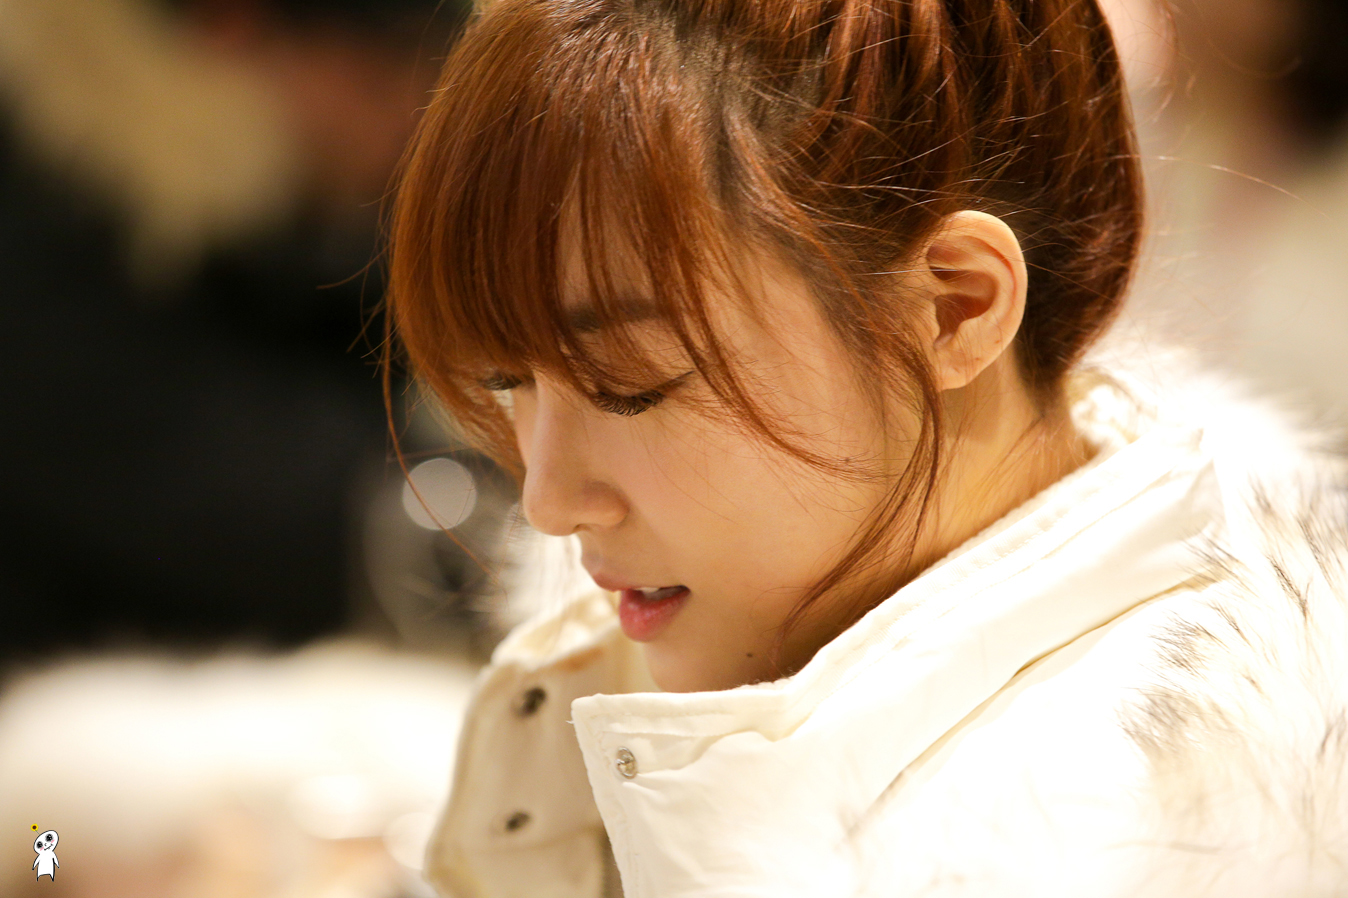 [PIC][28-11-2013]Tiffany ghé thăm cửa hàng "QUA" ở Hyundai Department Store vào trưa nay - Page 2 2363023D52980C880921A9